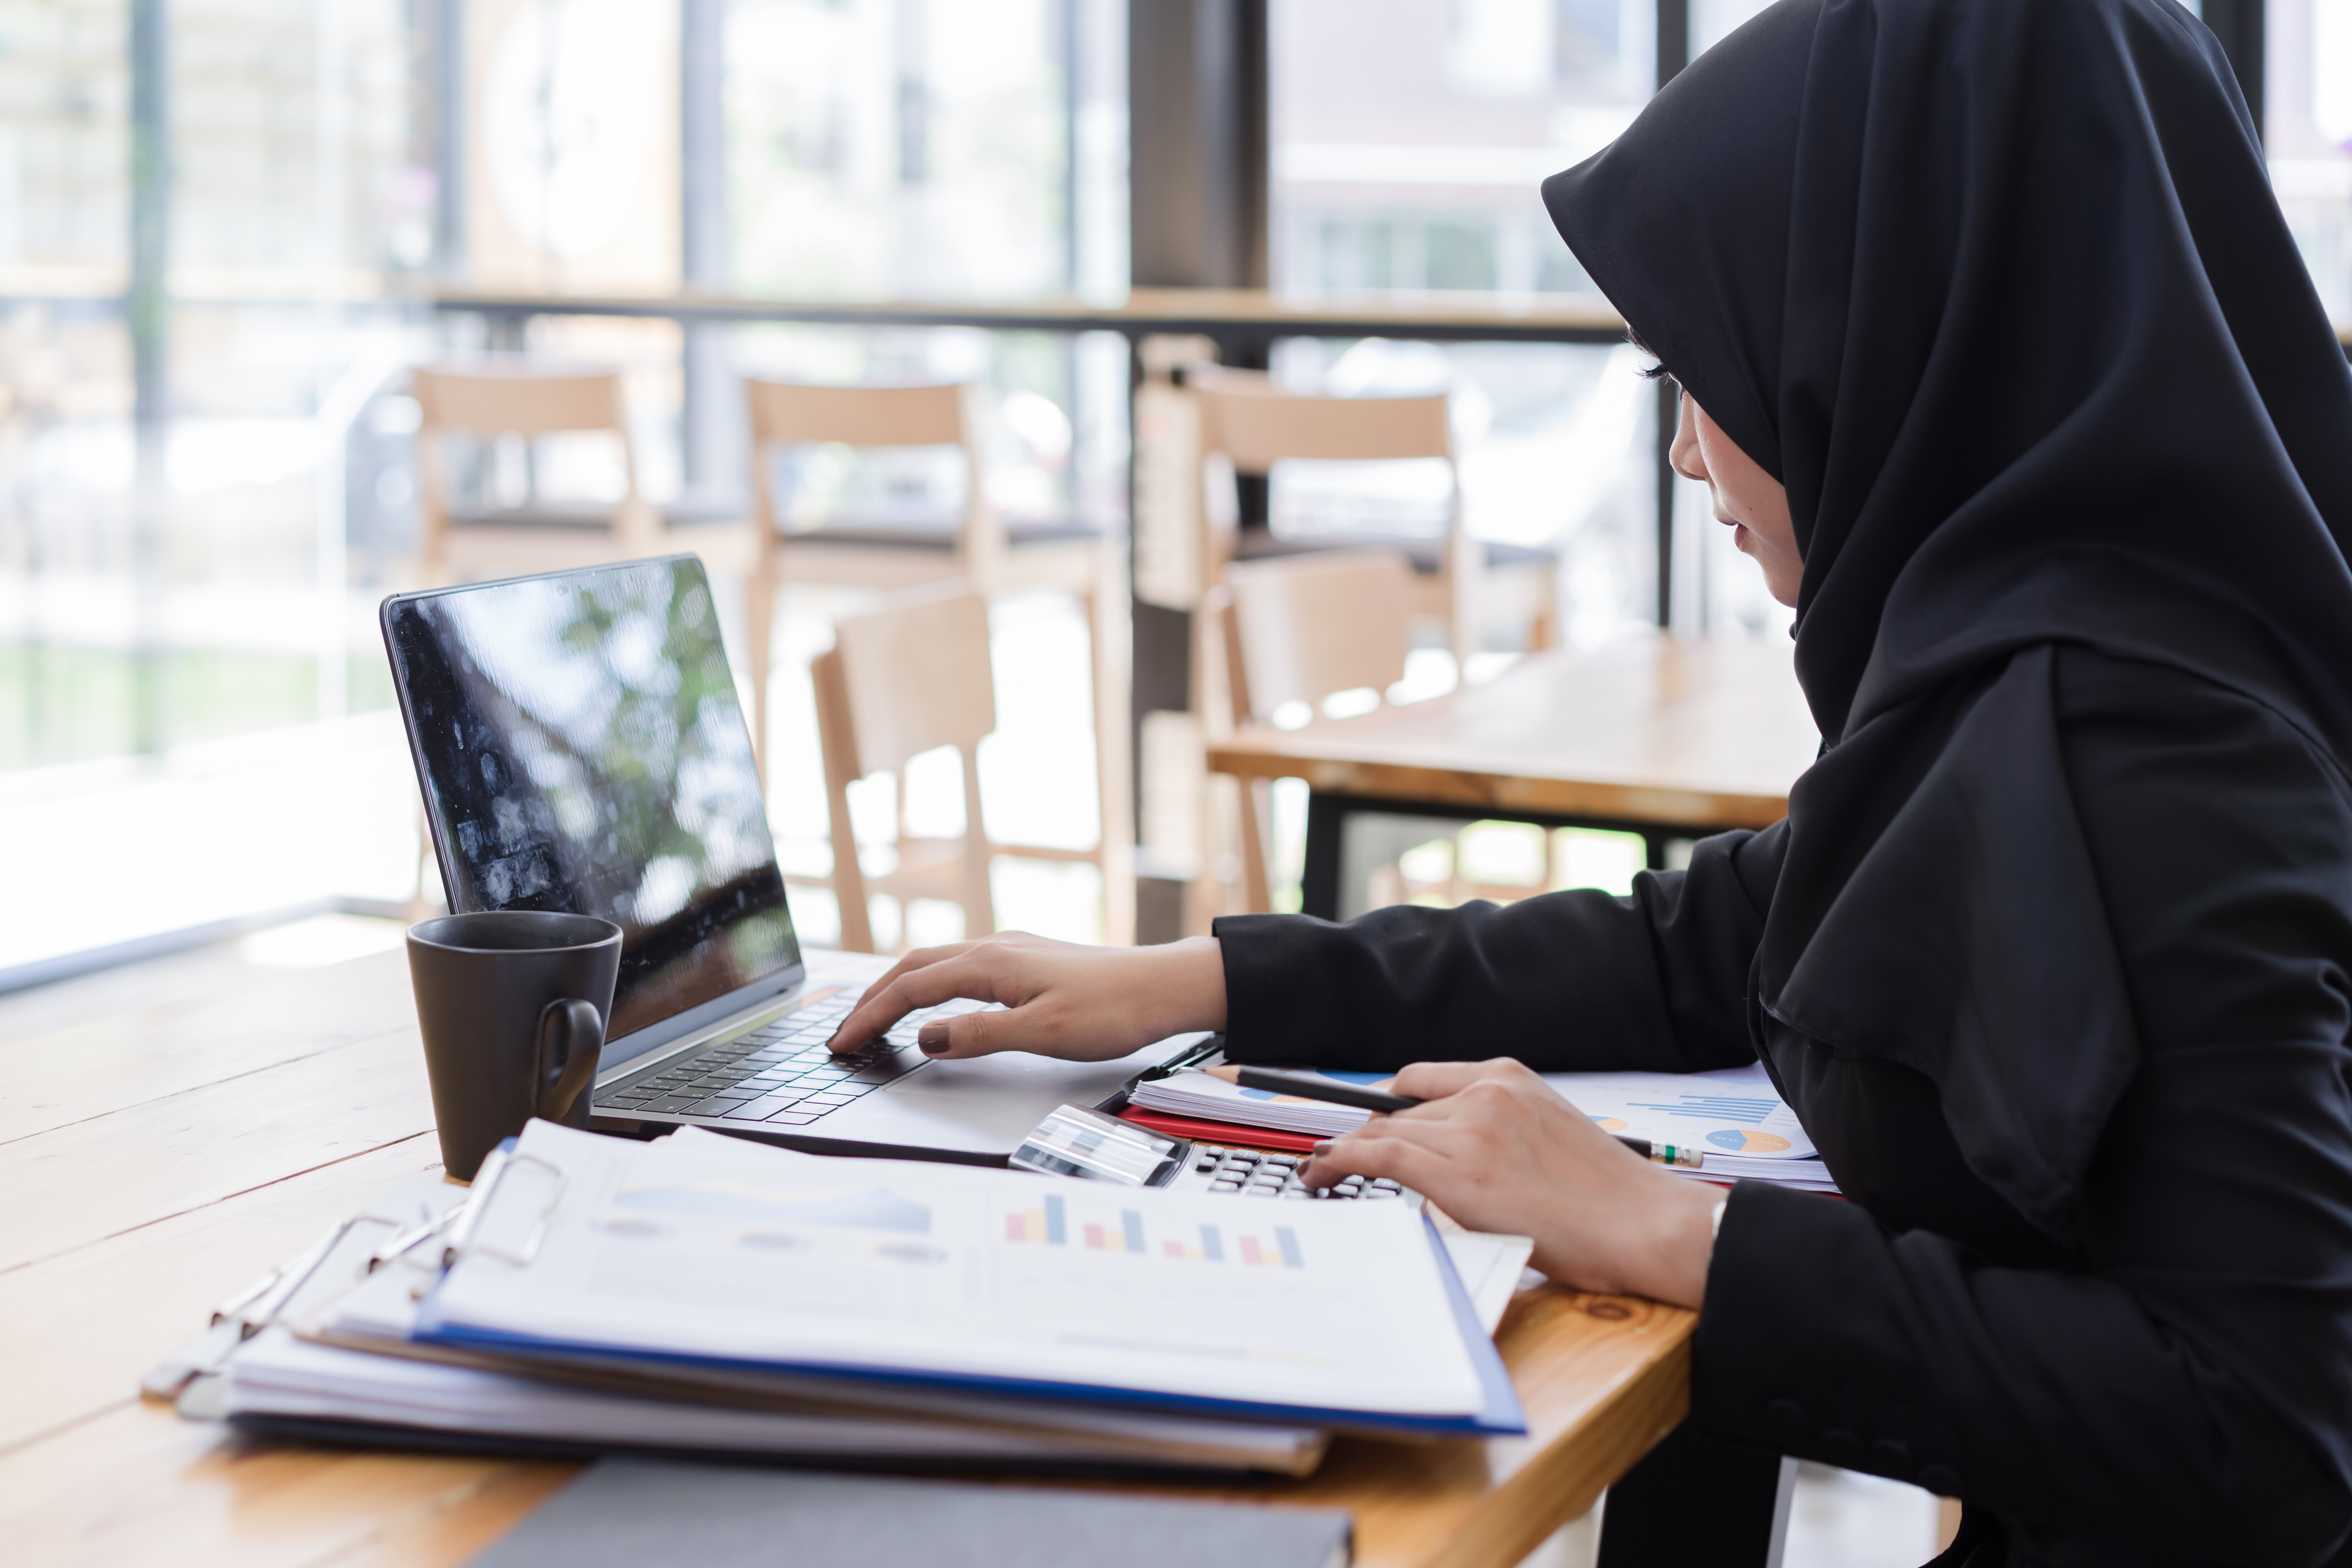 Muslim business people wearing black hijab,working in coffee shop.